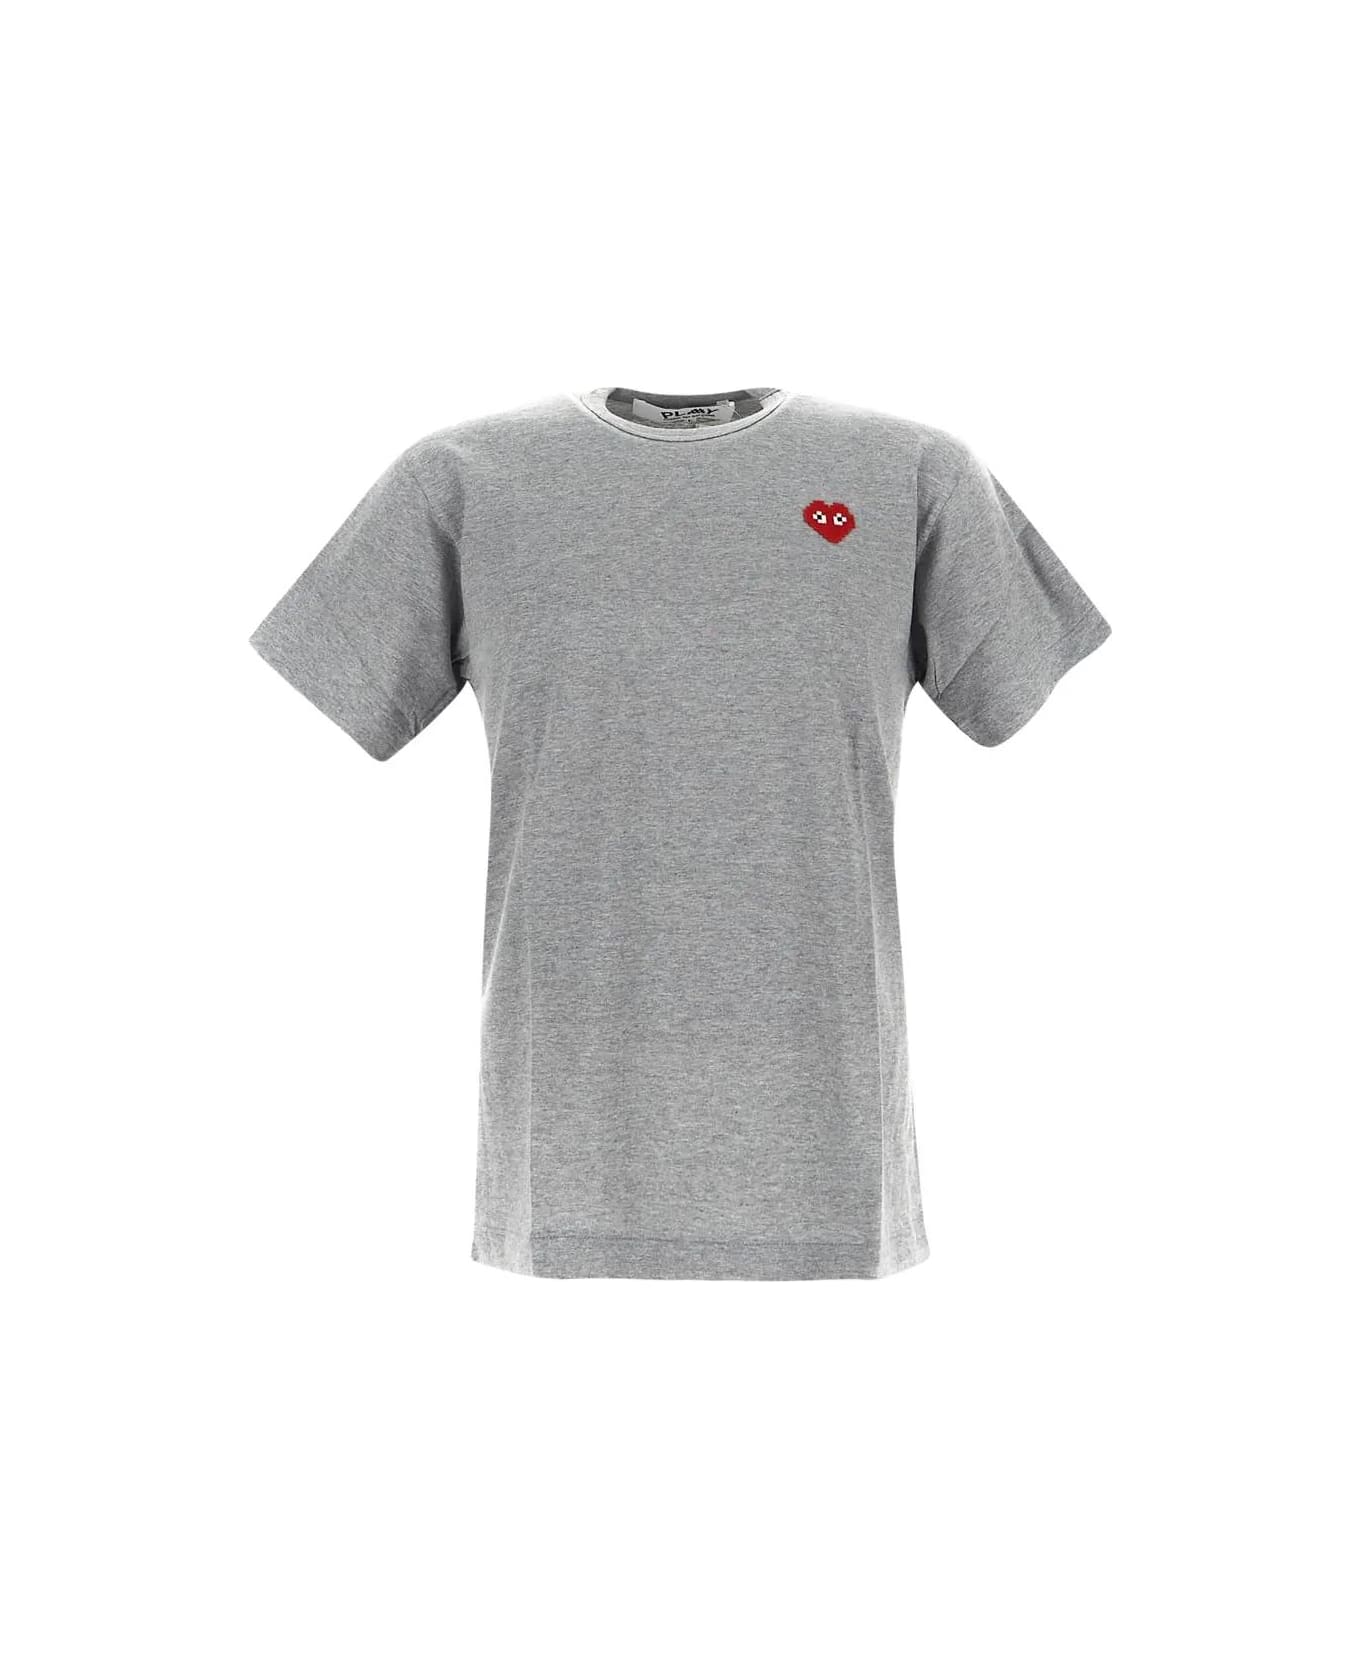 Comme des Garçons Shirt Boy Logo Embroidery T-shirt - Grey